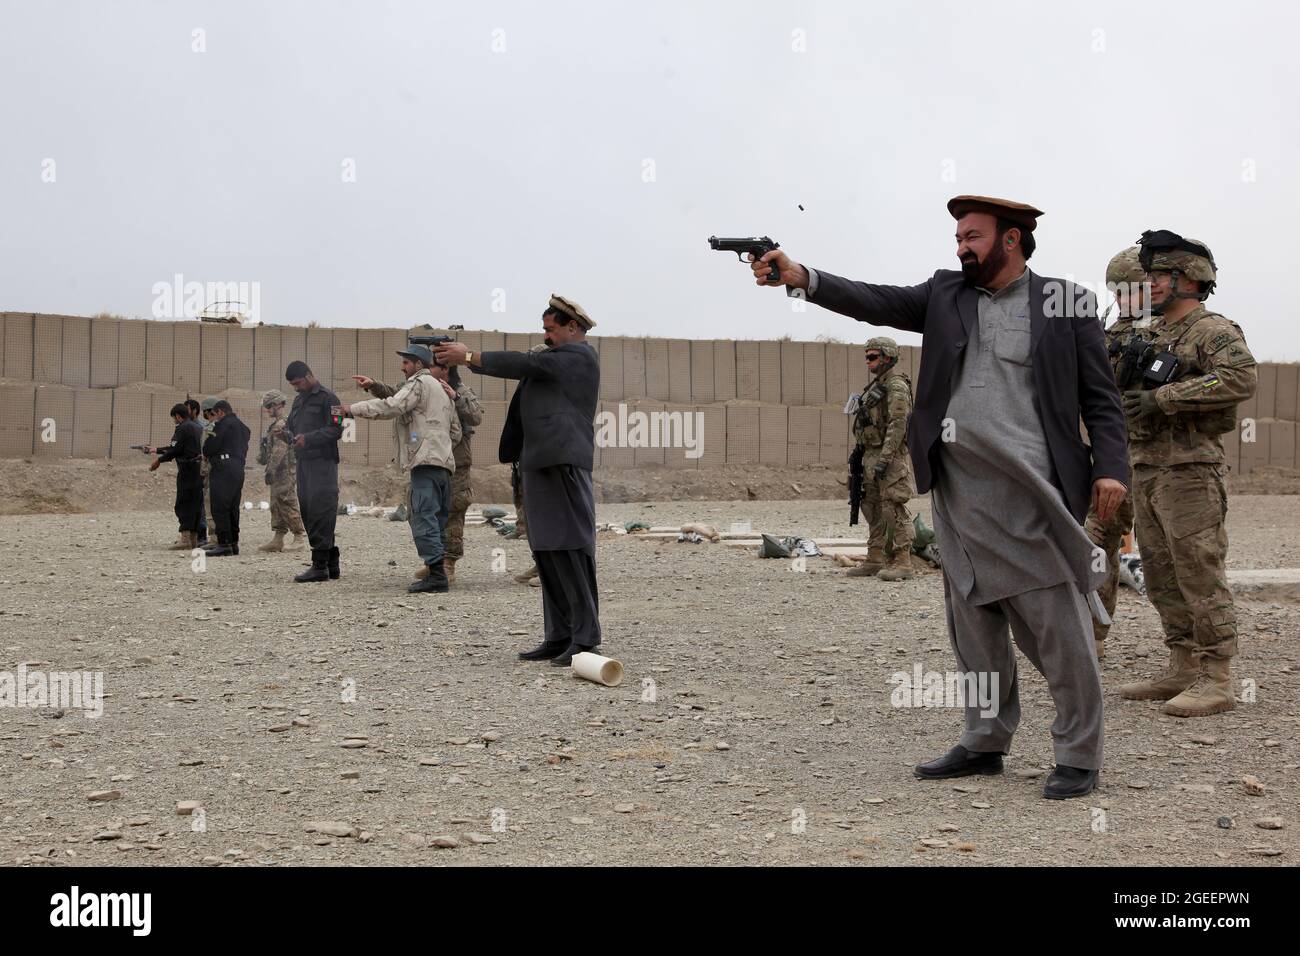 Mitarbeiter des afghanischen Nationalen Sicherheitsdirektorats und uniformierte afghanische Polizisten, die in der Stadt Khost stationiert sind, feuern M-9 Beretta-Pistolen auf einen kleinen Waffenbereich auf Camp Parsa, Provinz Khowst, Afghanistan, 30. Januar 2013. Soldaten der US-Armee, die dem Team 28 der Sicherheitskräfte, der Task Force 3/101, zugewiesen wurden, planten die Reichweite und unterstützten die AUP und die NDS beim sicheren Üben mit ihren Waffen. (USA Armeefoto von Sgt. Kimberly Trumbull / Veröffentlicht) Stockfoto